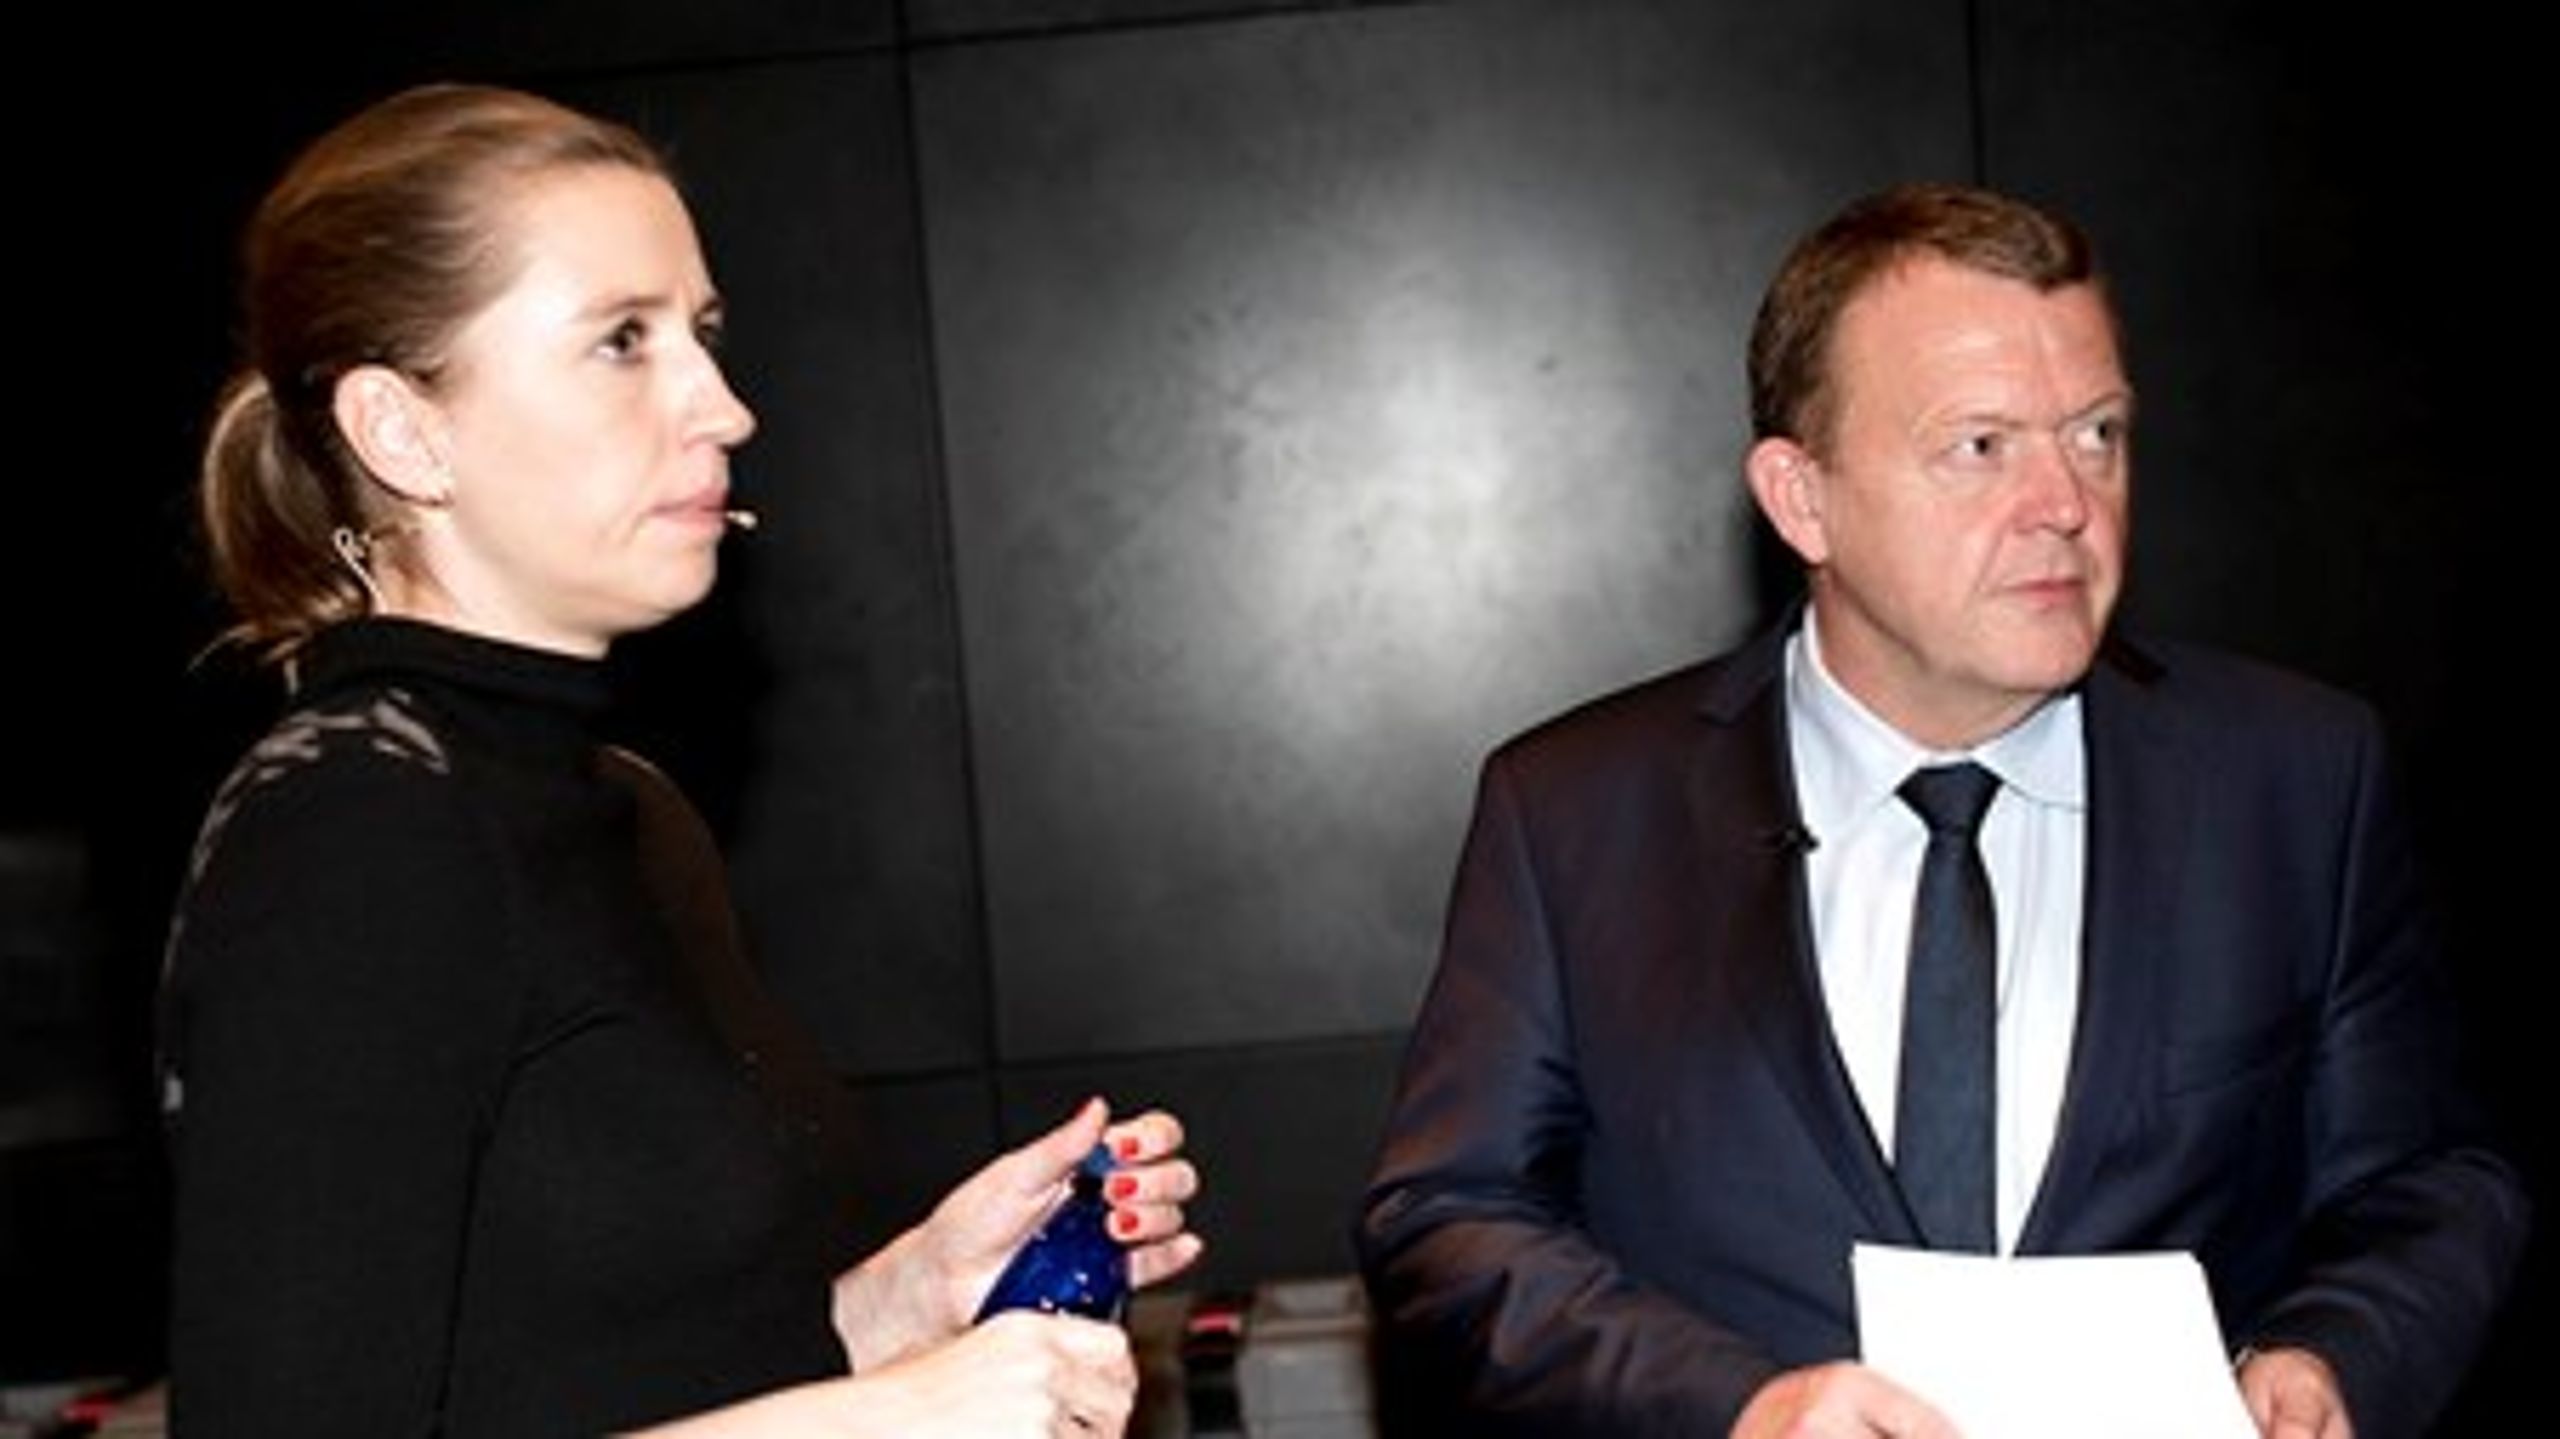 To politiske modstandere, som for tiden står sammen i dansk politik. S-formand&nbsp;Mette Frederiksen og statsminister Lars Løkke Rasmussen (V) kæmper for at hive et ja hjem på torsdag. Men noget tyder på, at det kniber med kommunikationen.&nbsp;